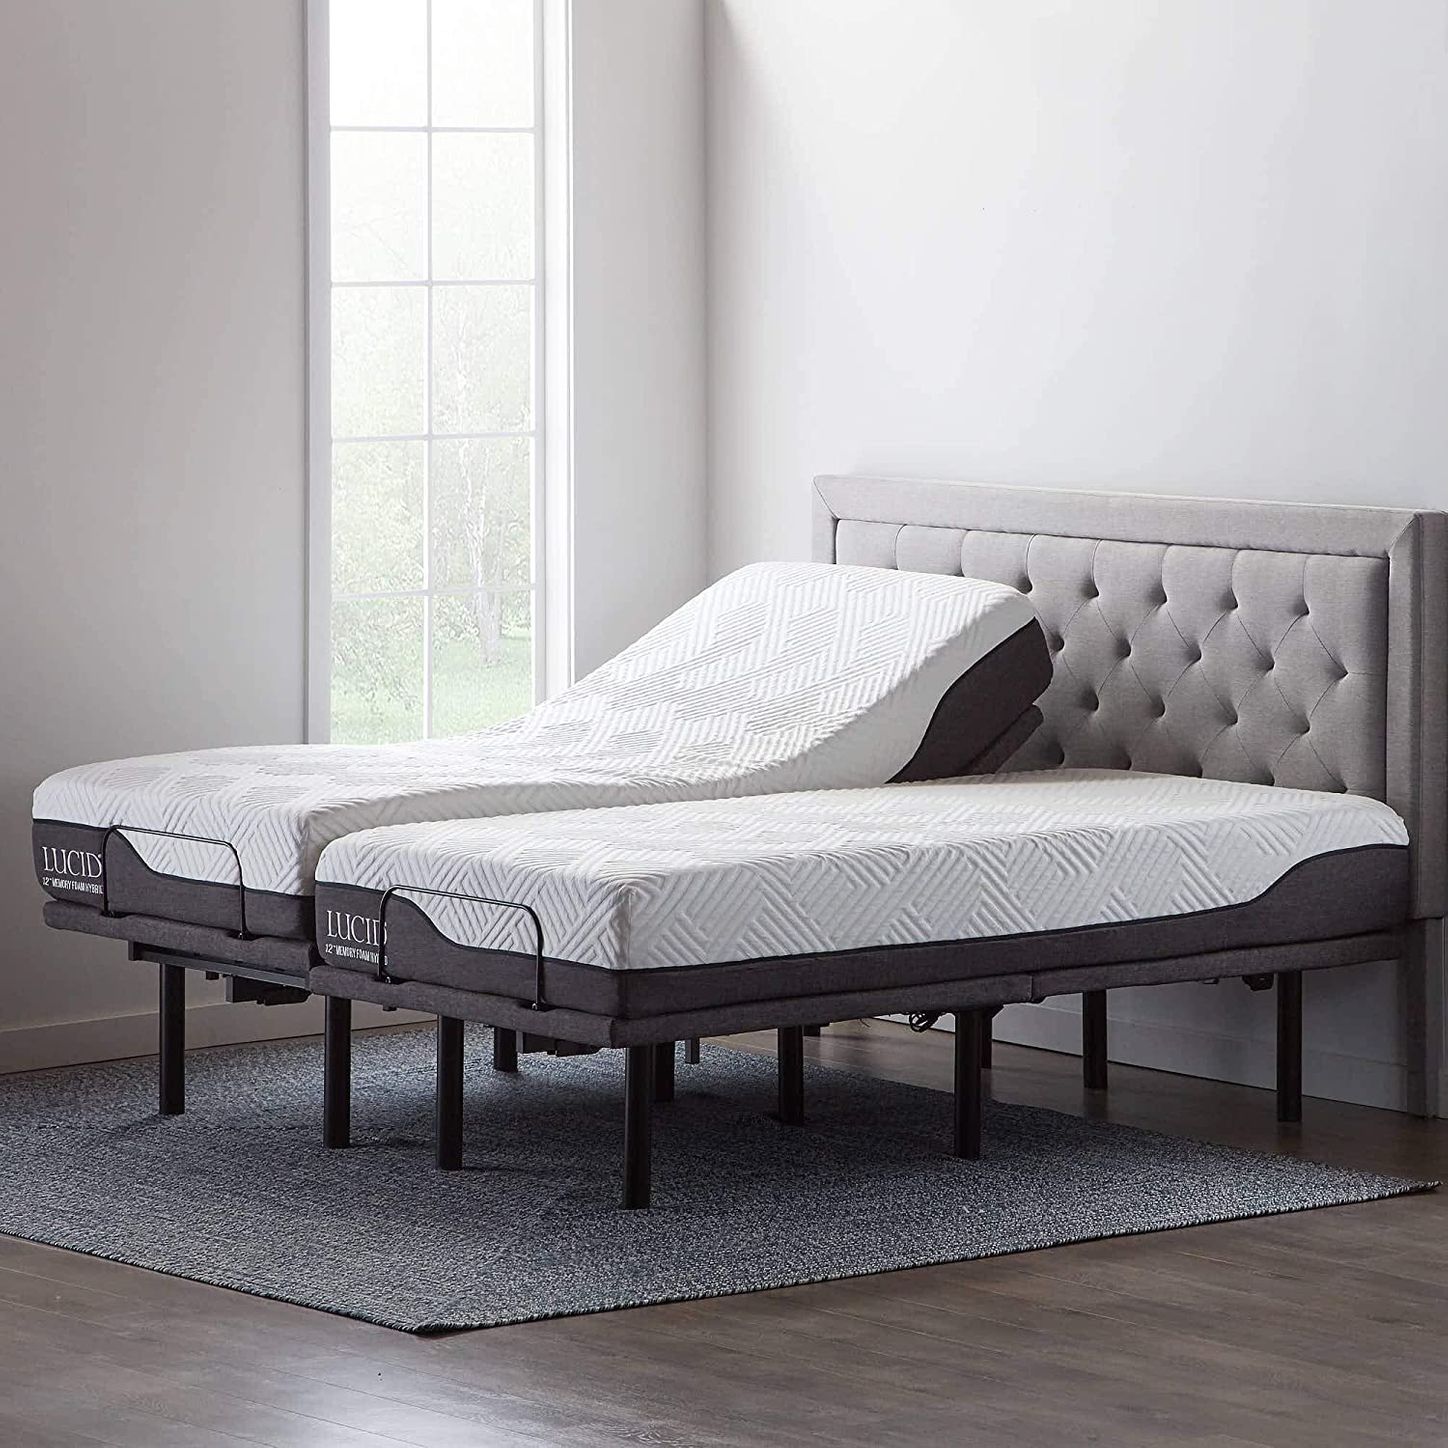 10 Best Adjustable Bed Bases 2022 The, Best Adjustable Bed Frame For Sleep Number